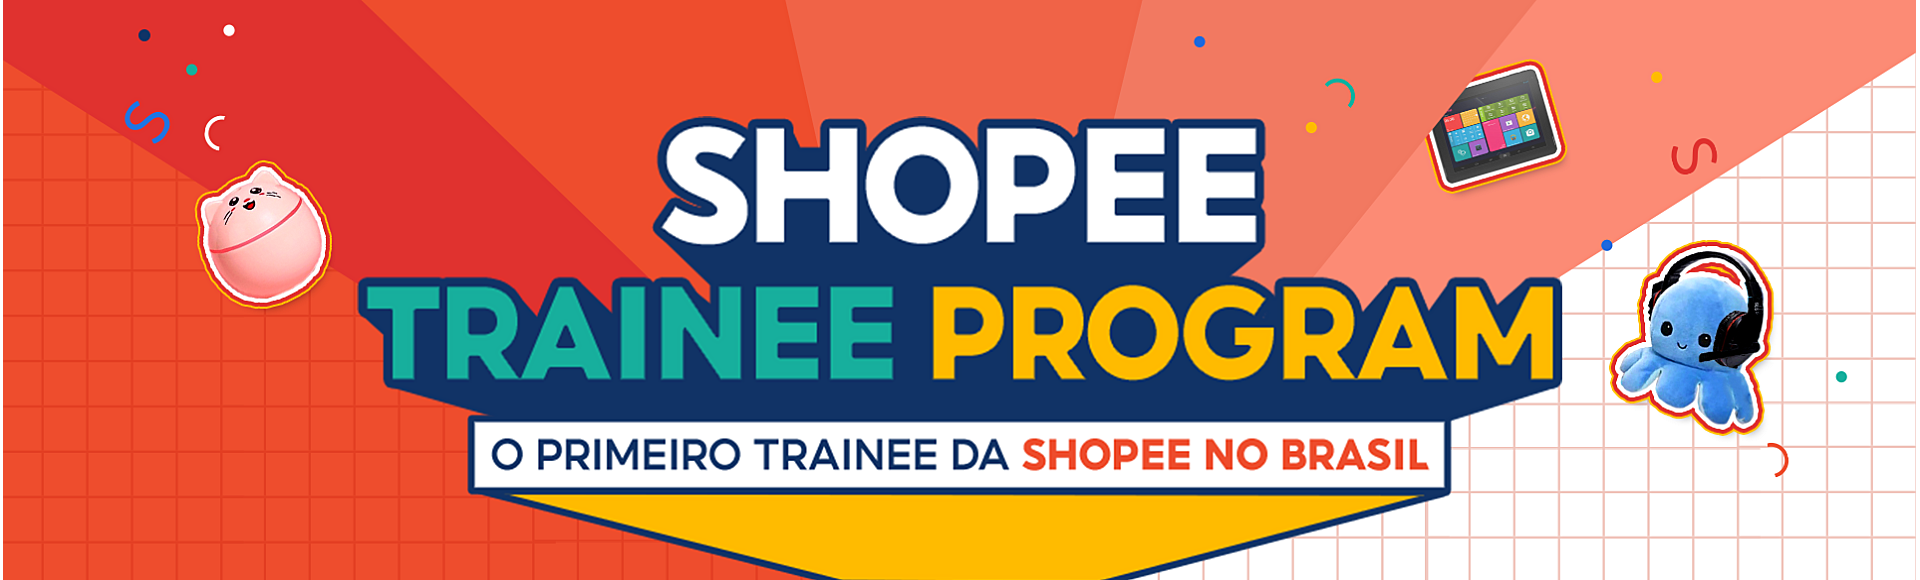 Shopee Trainee Program. O primeiro Trainee da Shopee no Brasil. Ilustrações de tablets, fones e brinquedos.